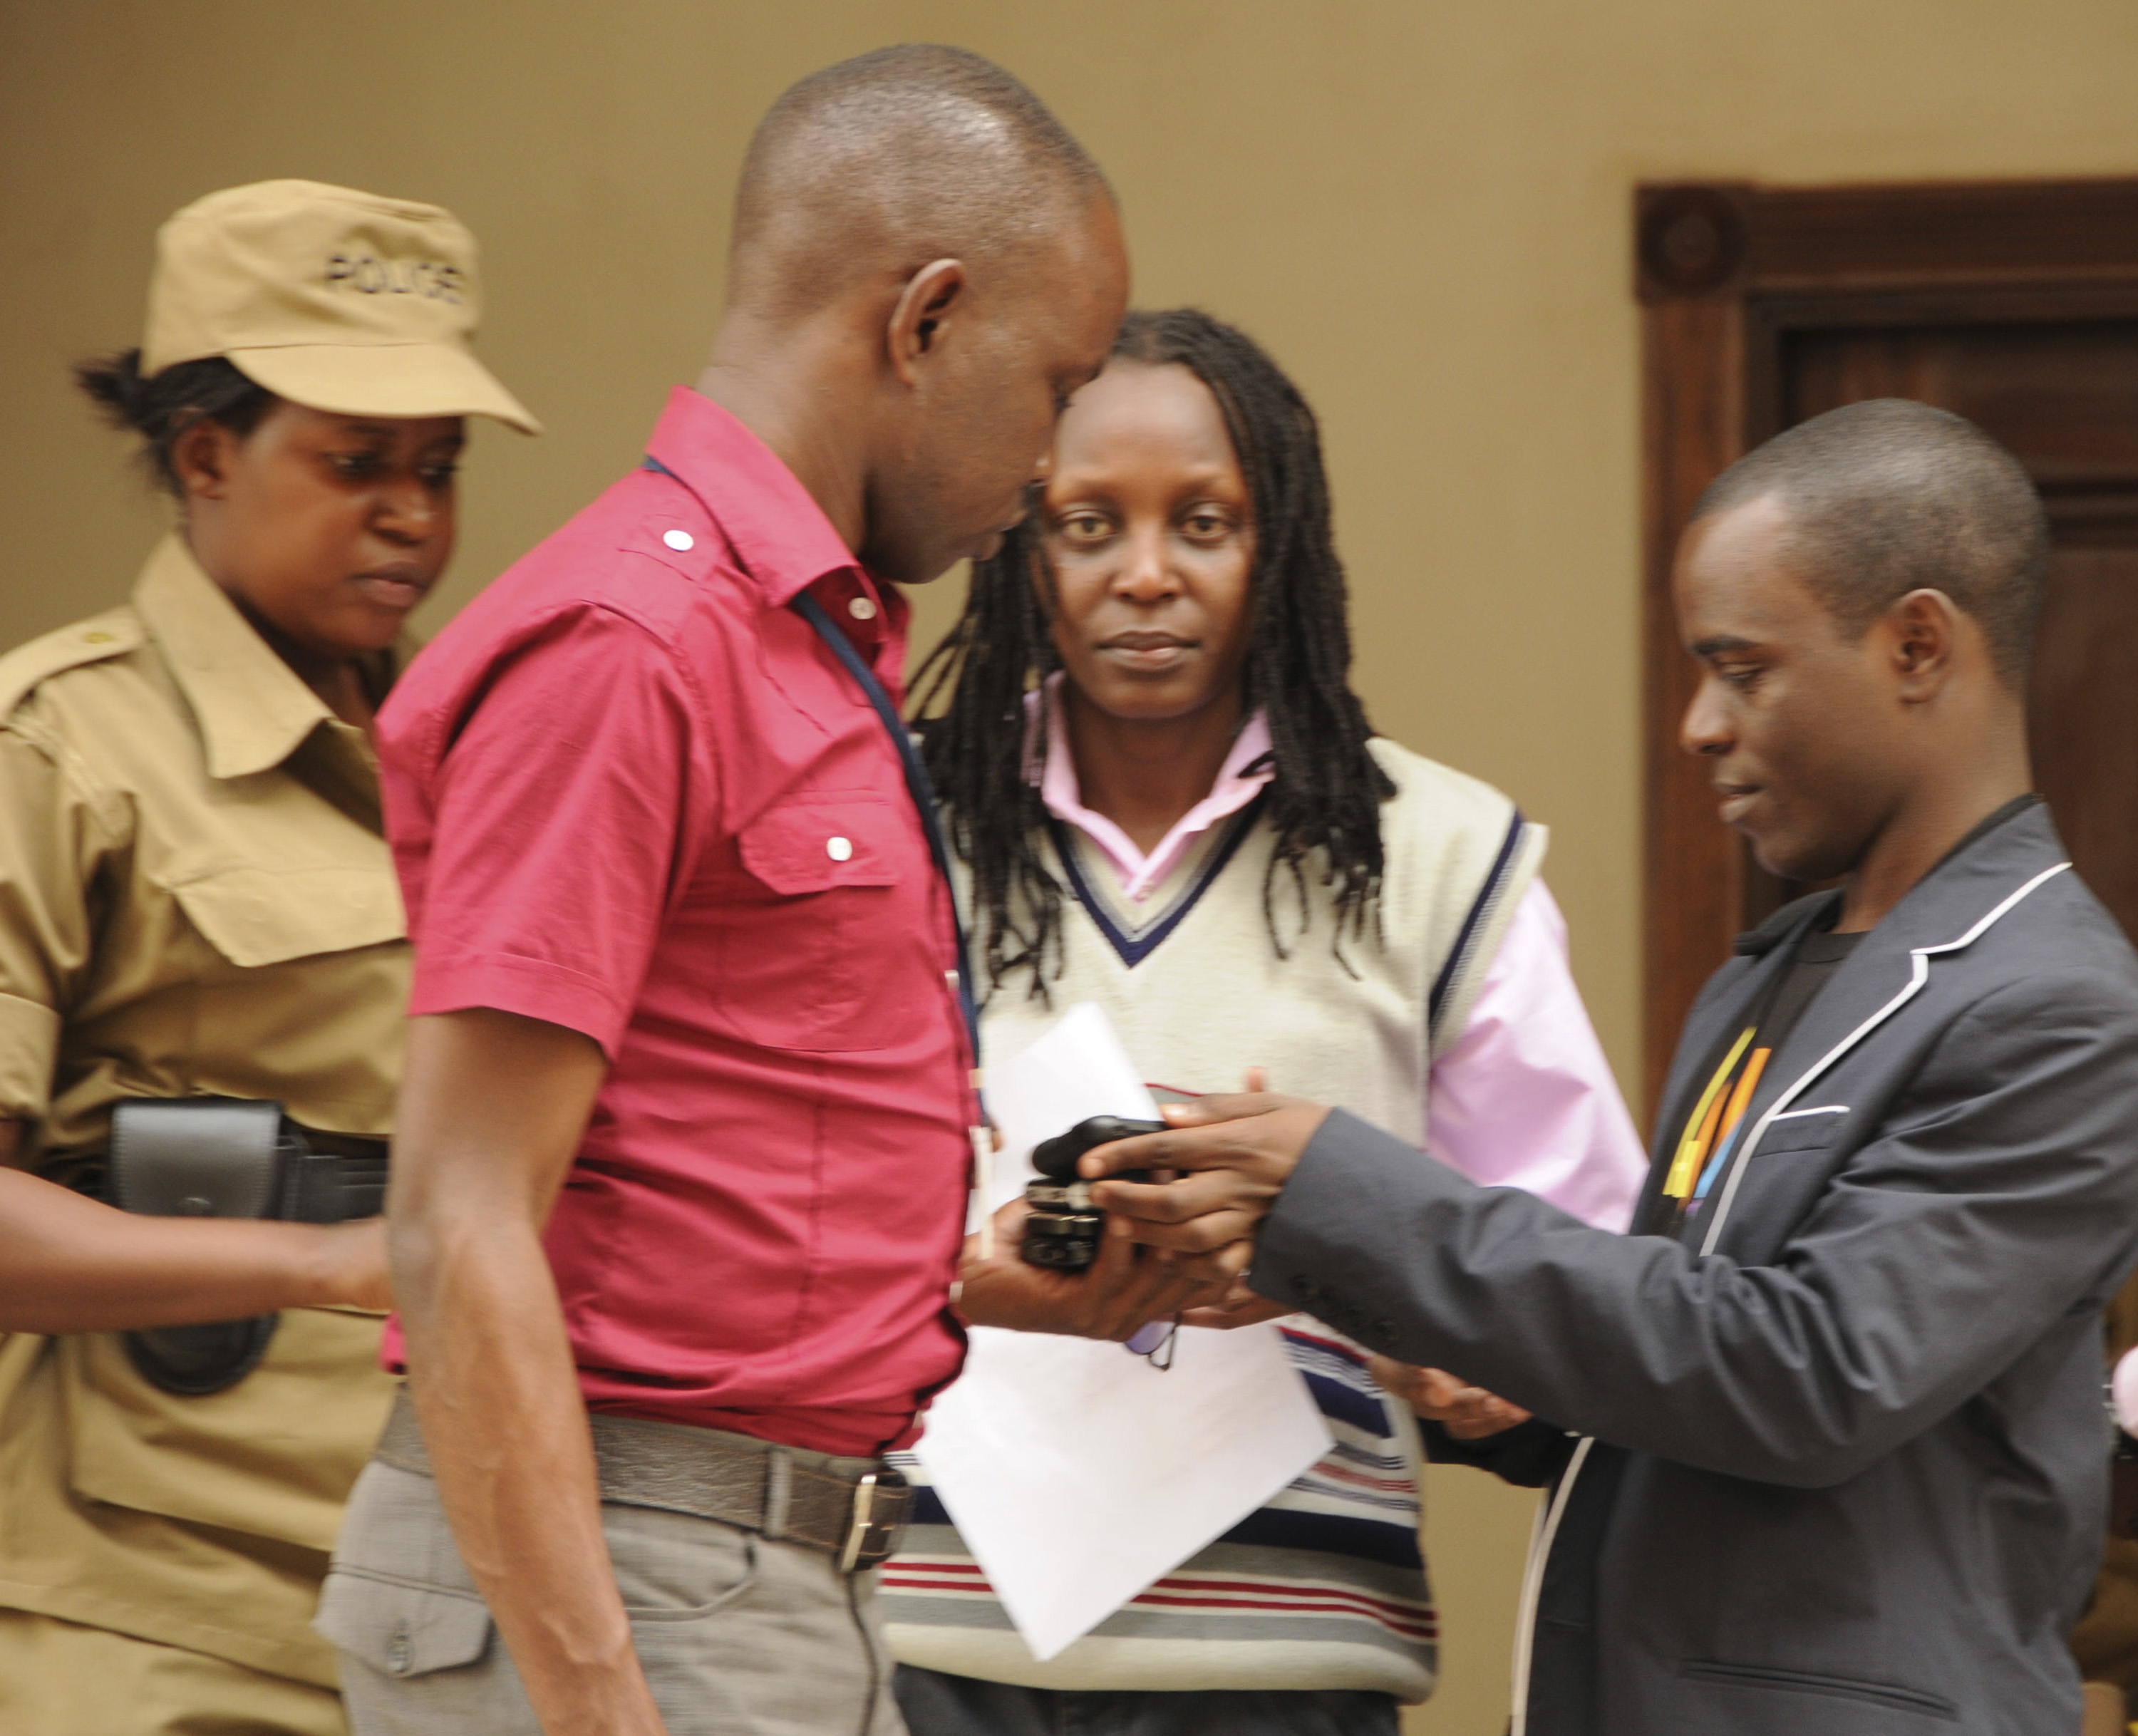 Ugandisk polis till höger och HBT-förespråkare till vänster.